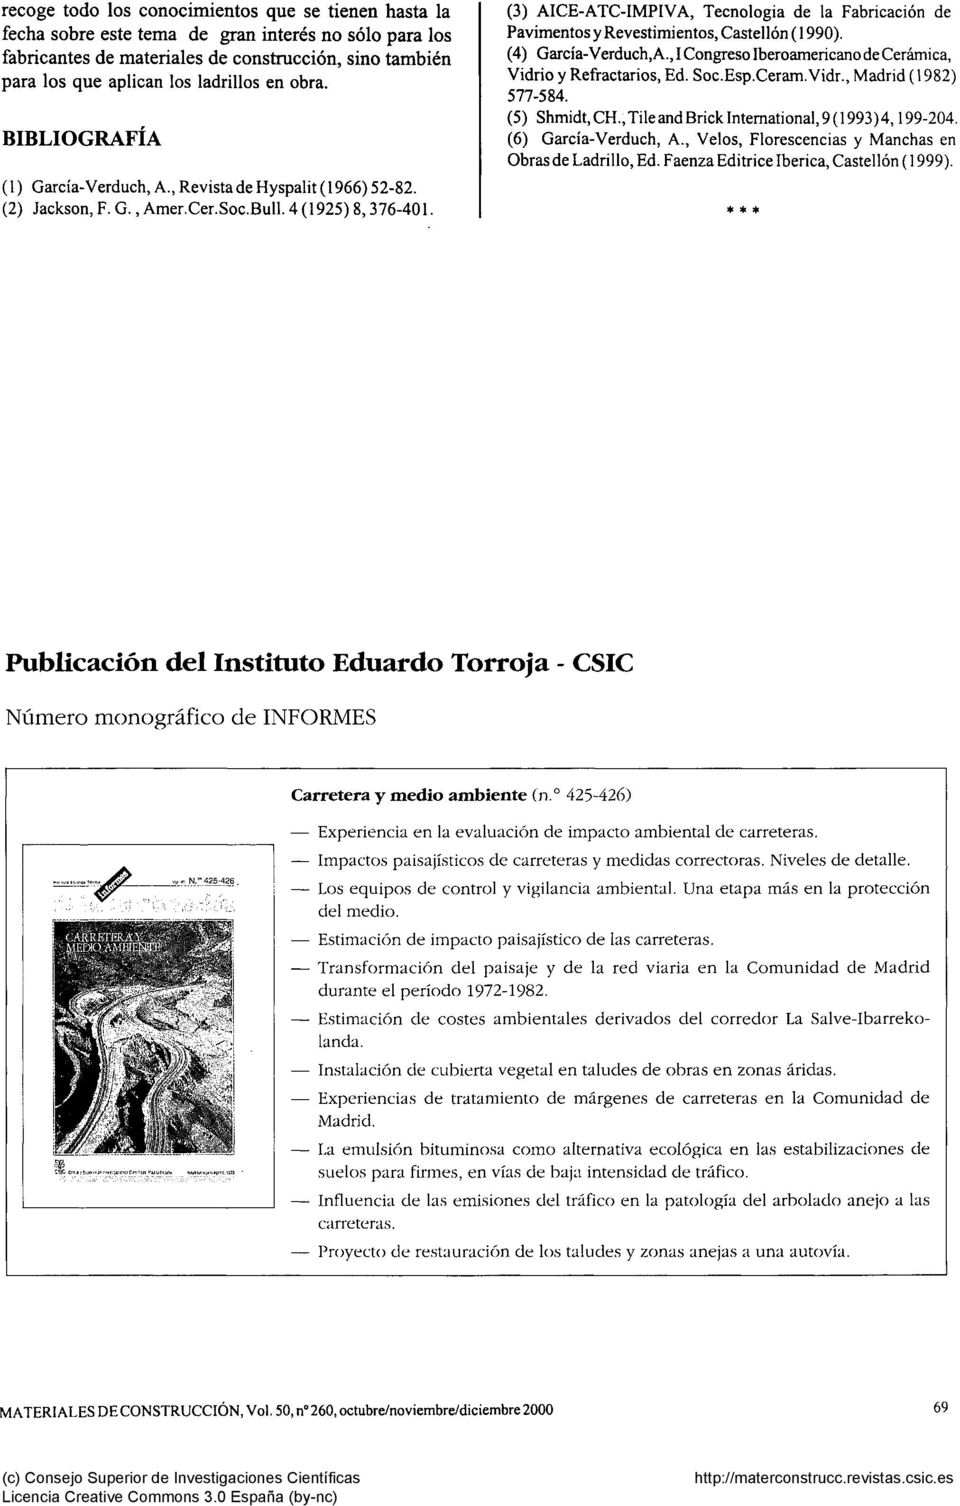 (3) AICE-ATC-IMPIVA, Tecnologia de la Fabricación de Pavimentos y Revestimientos, Castellón ( 1990). (4) García-Verduch, A., I Congreso Iberoamericano de Cerámica, Vidrio y Refractarios, Ed. Soc.Esp.